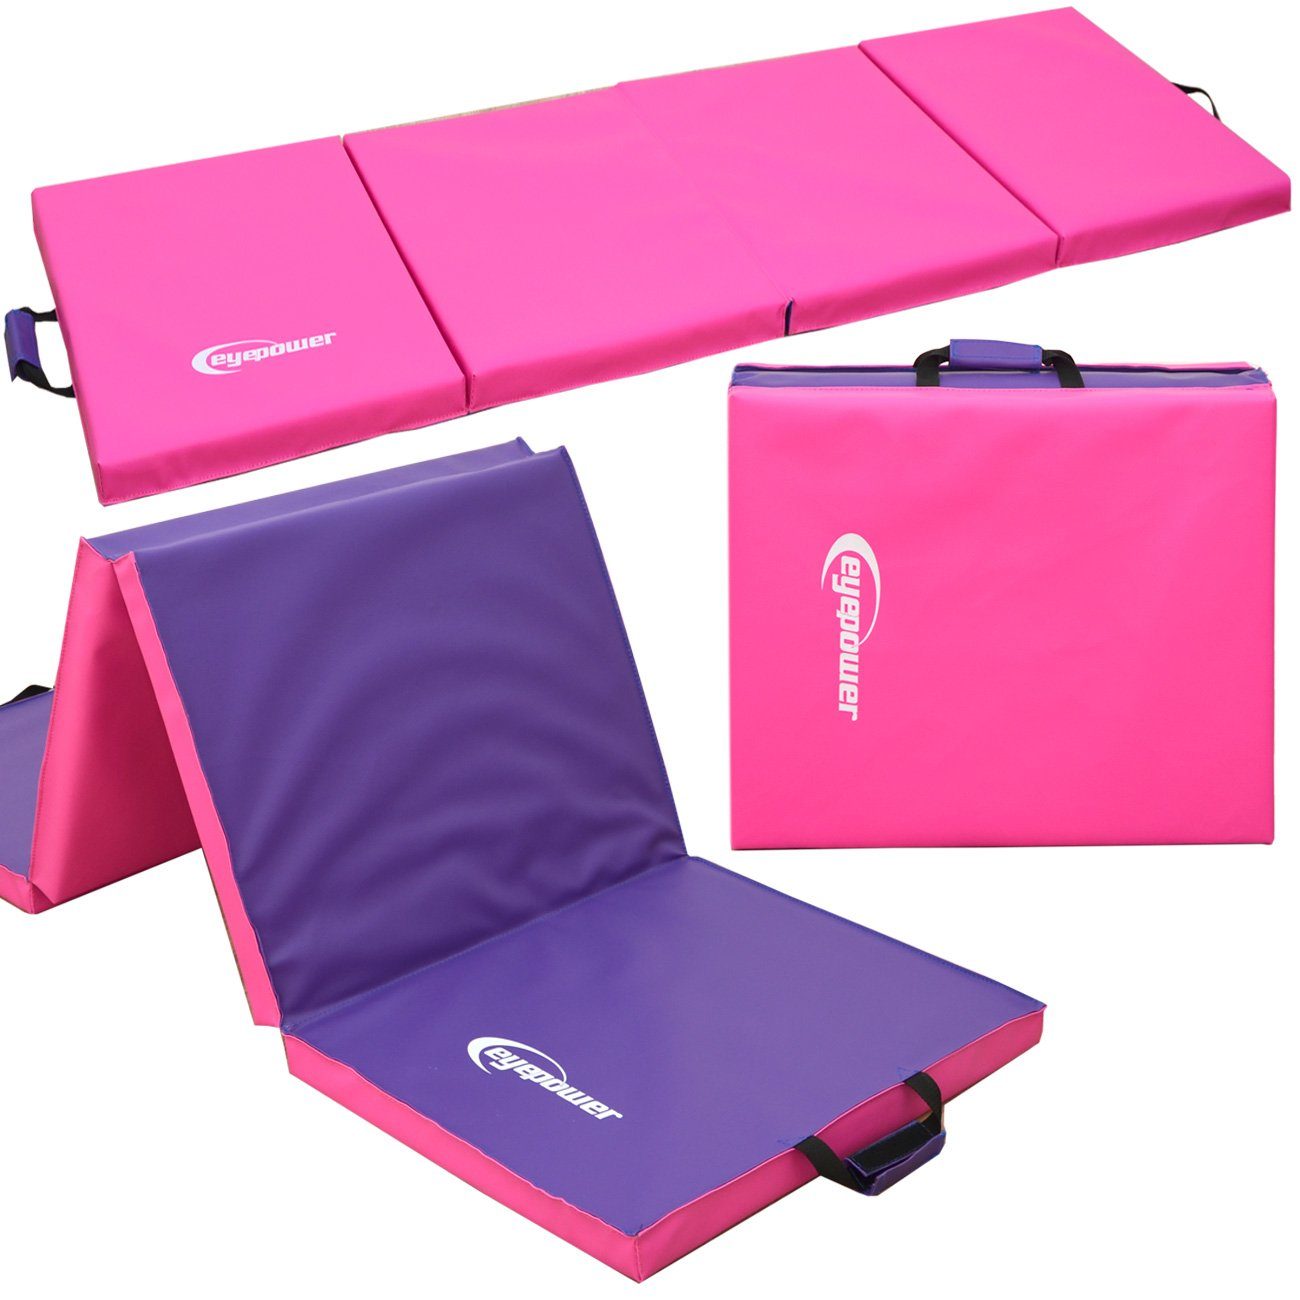 eyepower Fitnessmatte XL Gymnastikmatte Sport-, Turn- und Bodenmatte, Weichbodenmatte pink | Sportmatten